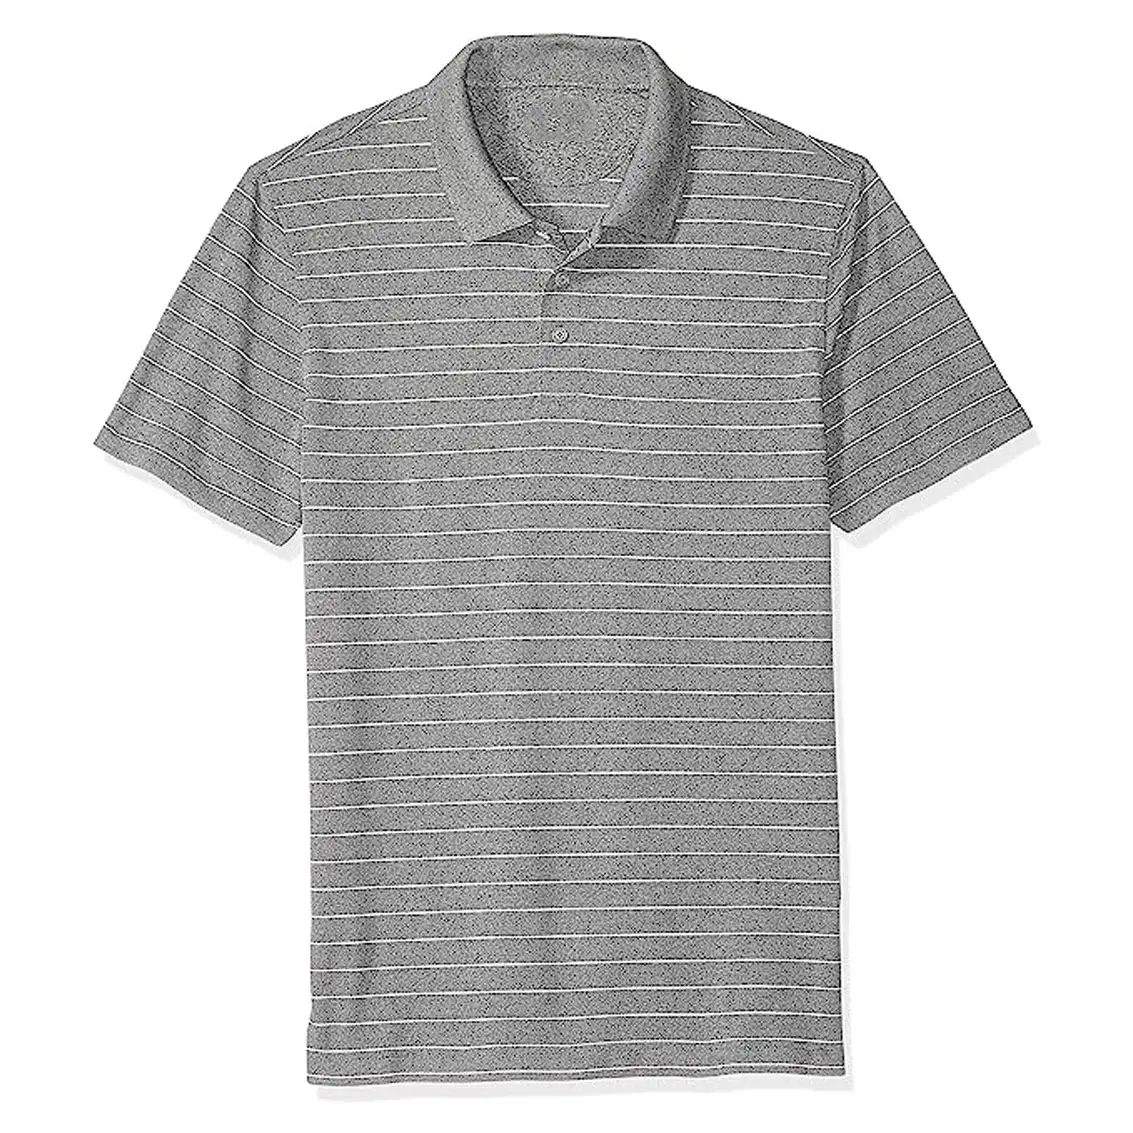 Vestiti firmati di alta qualità marche famose fabbrica ricamo personalizzato Logo Dry Fit t-shirt all'ingrosso di alta qualità